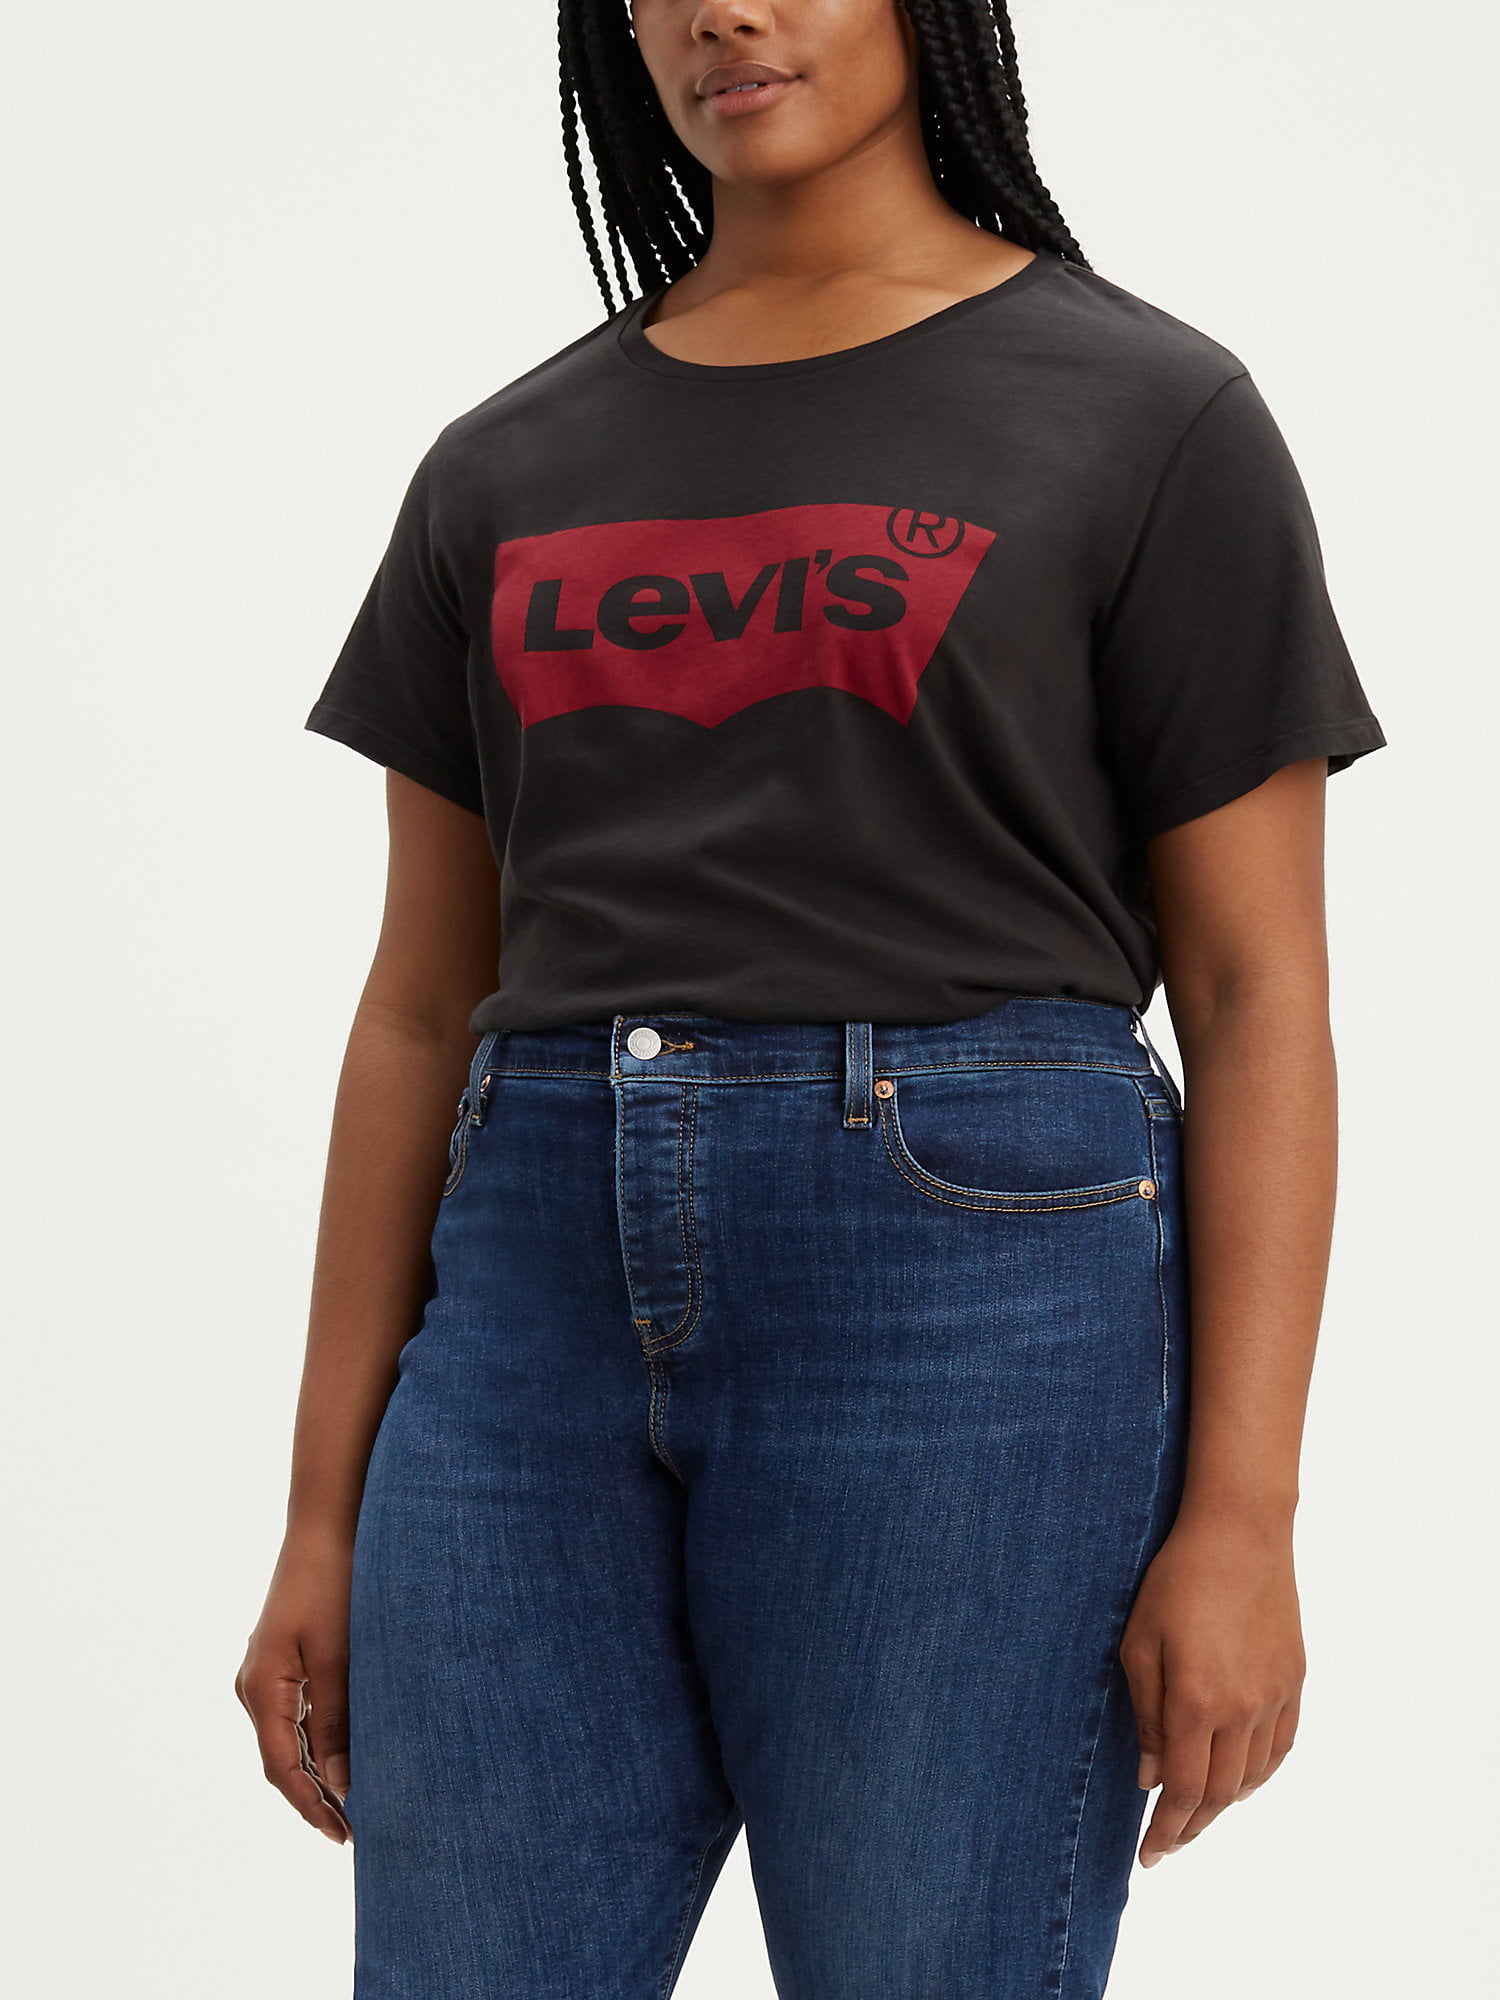 levis written t shirt